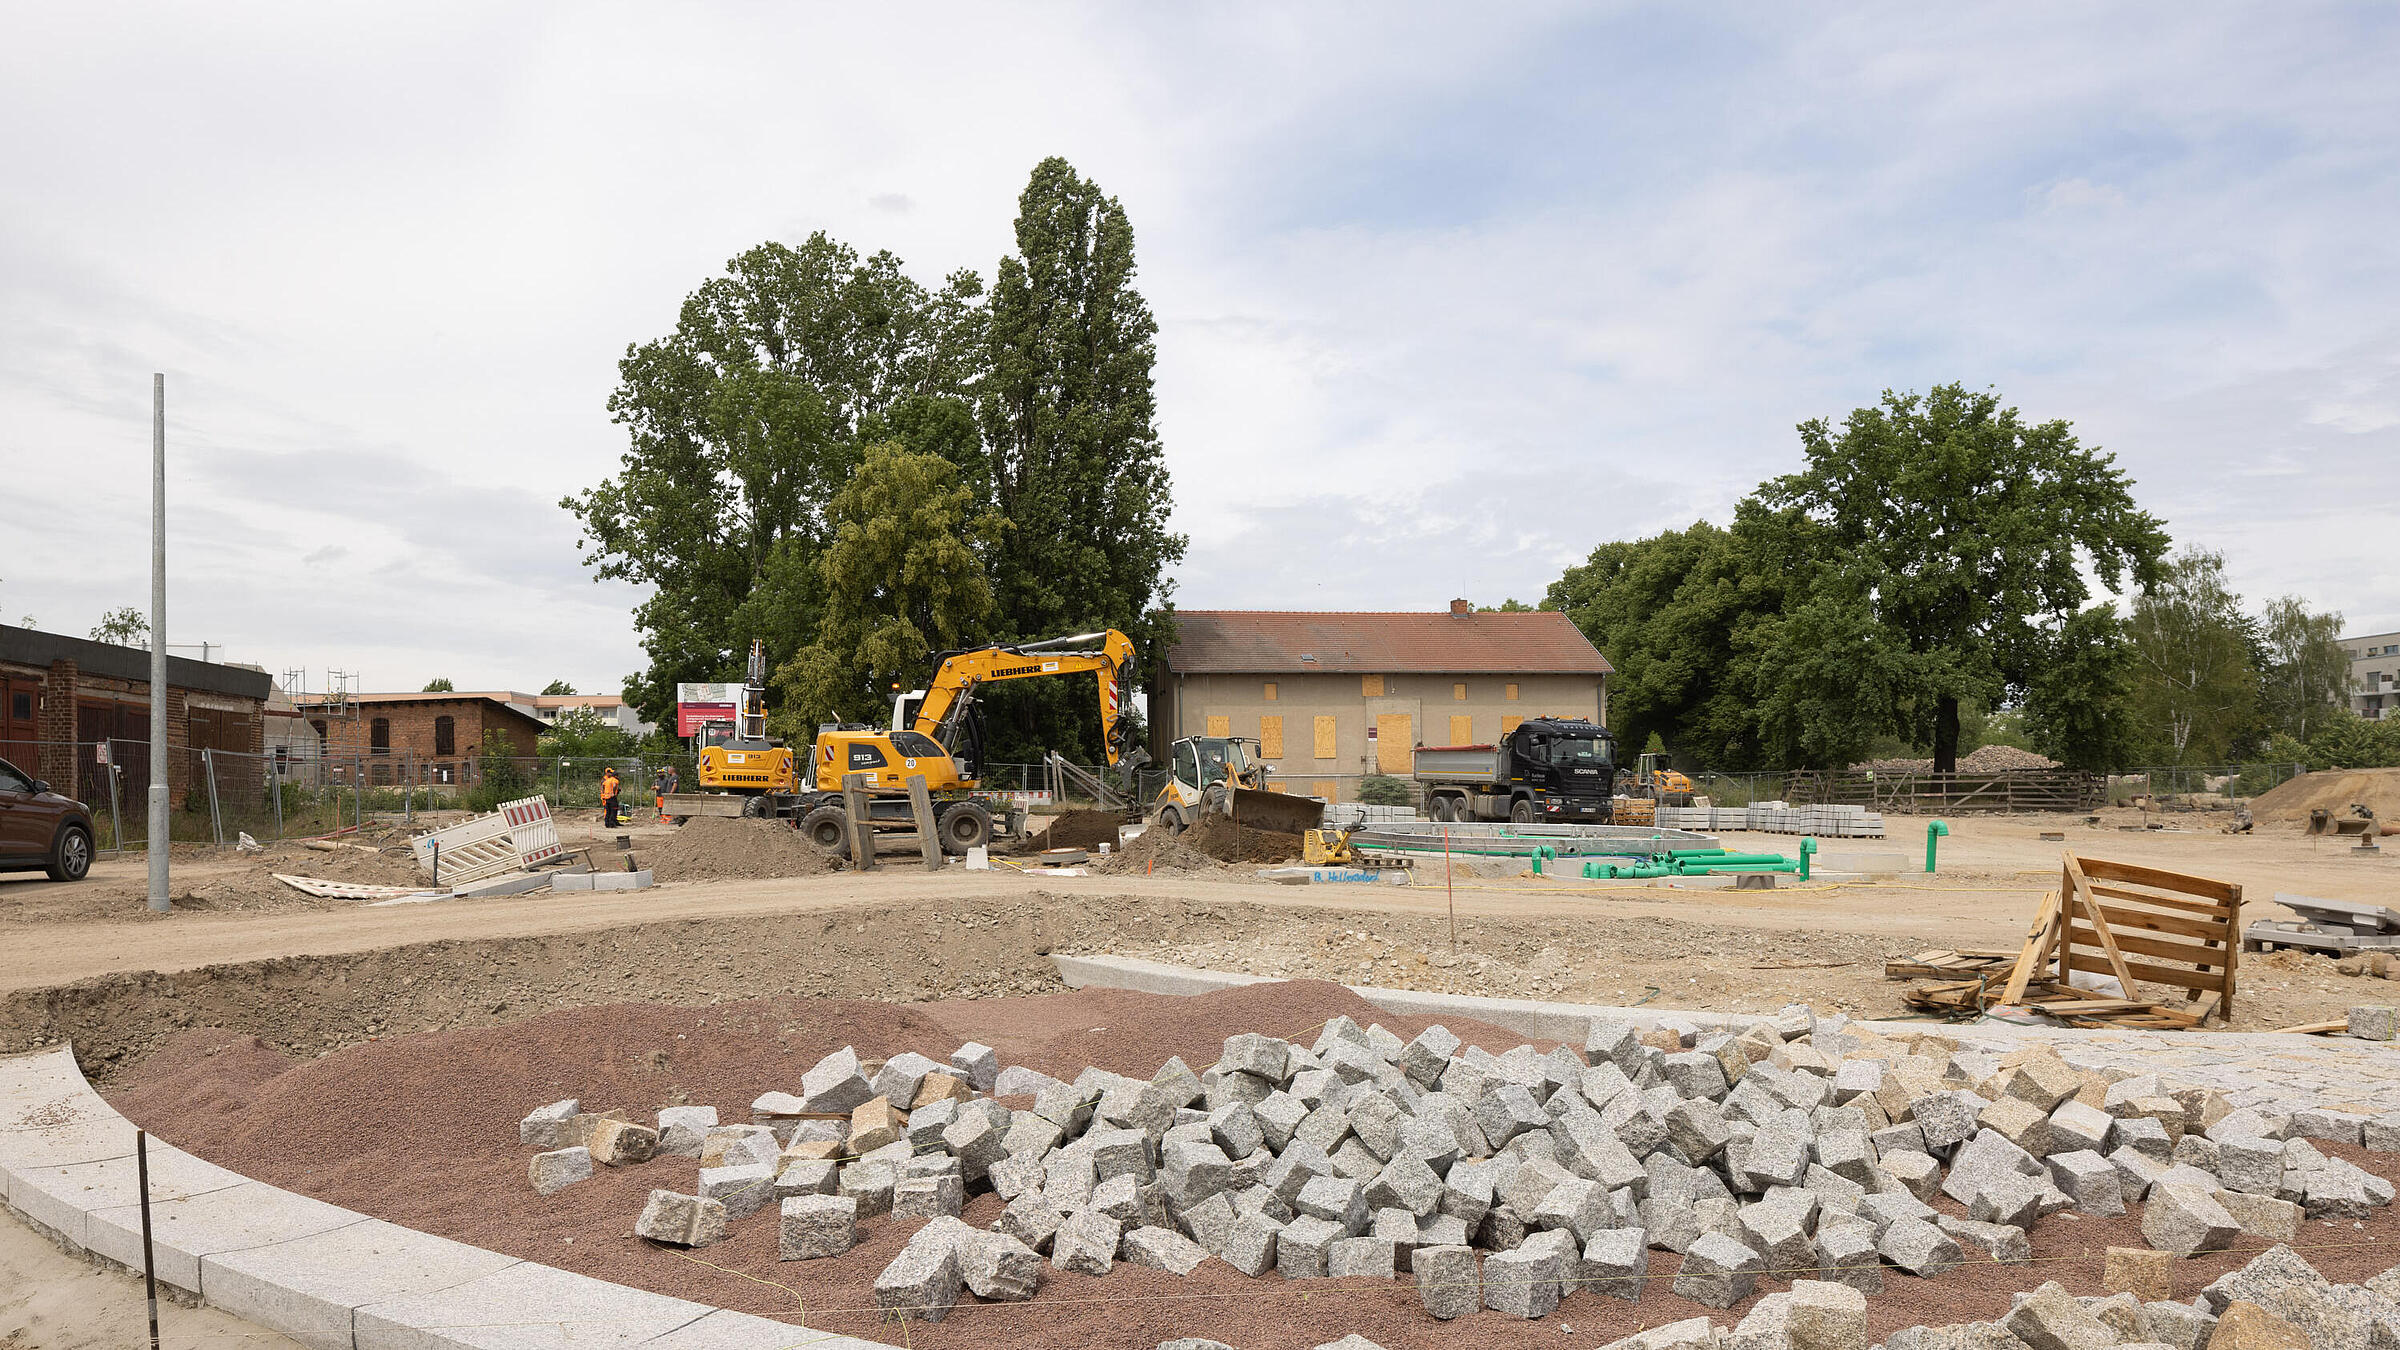 Stadtplatz im Quartier Stadtgut Hellersdorf: Pflastersteine liegen auf einer sandigen Fläche und werden später einen großen Platz ergeben